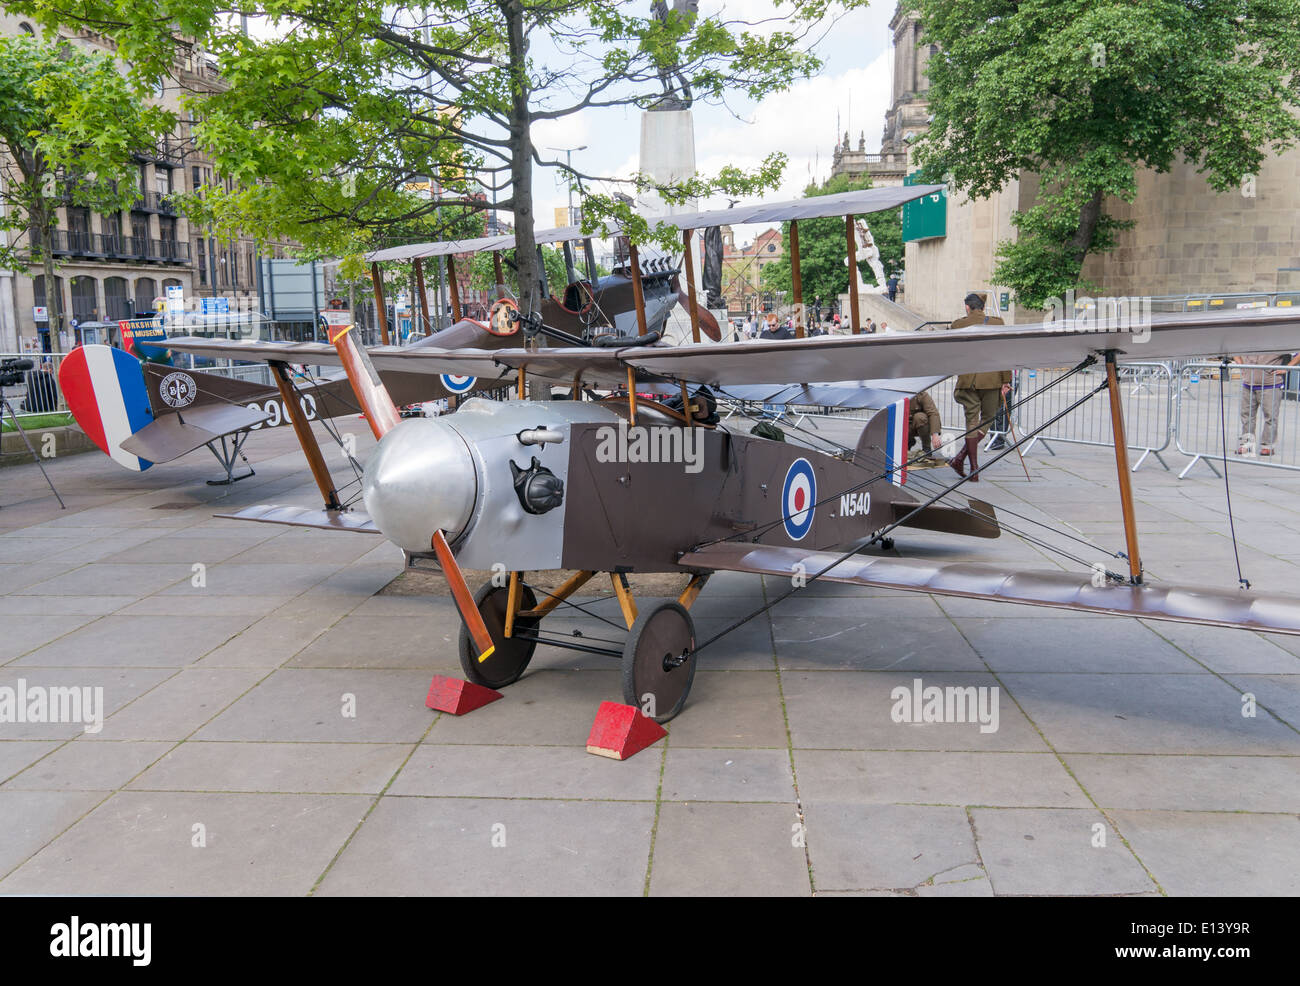 Prototipo di replica da combattimento aereo Leeds, nello Yorkshire, Inghilterra, Regno Unito Foto Stock